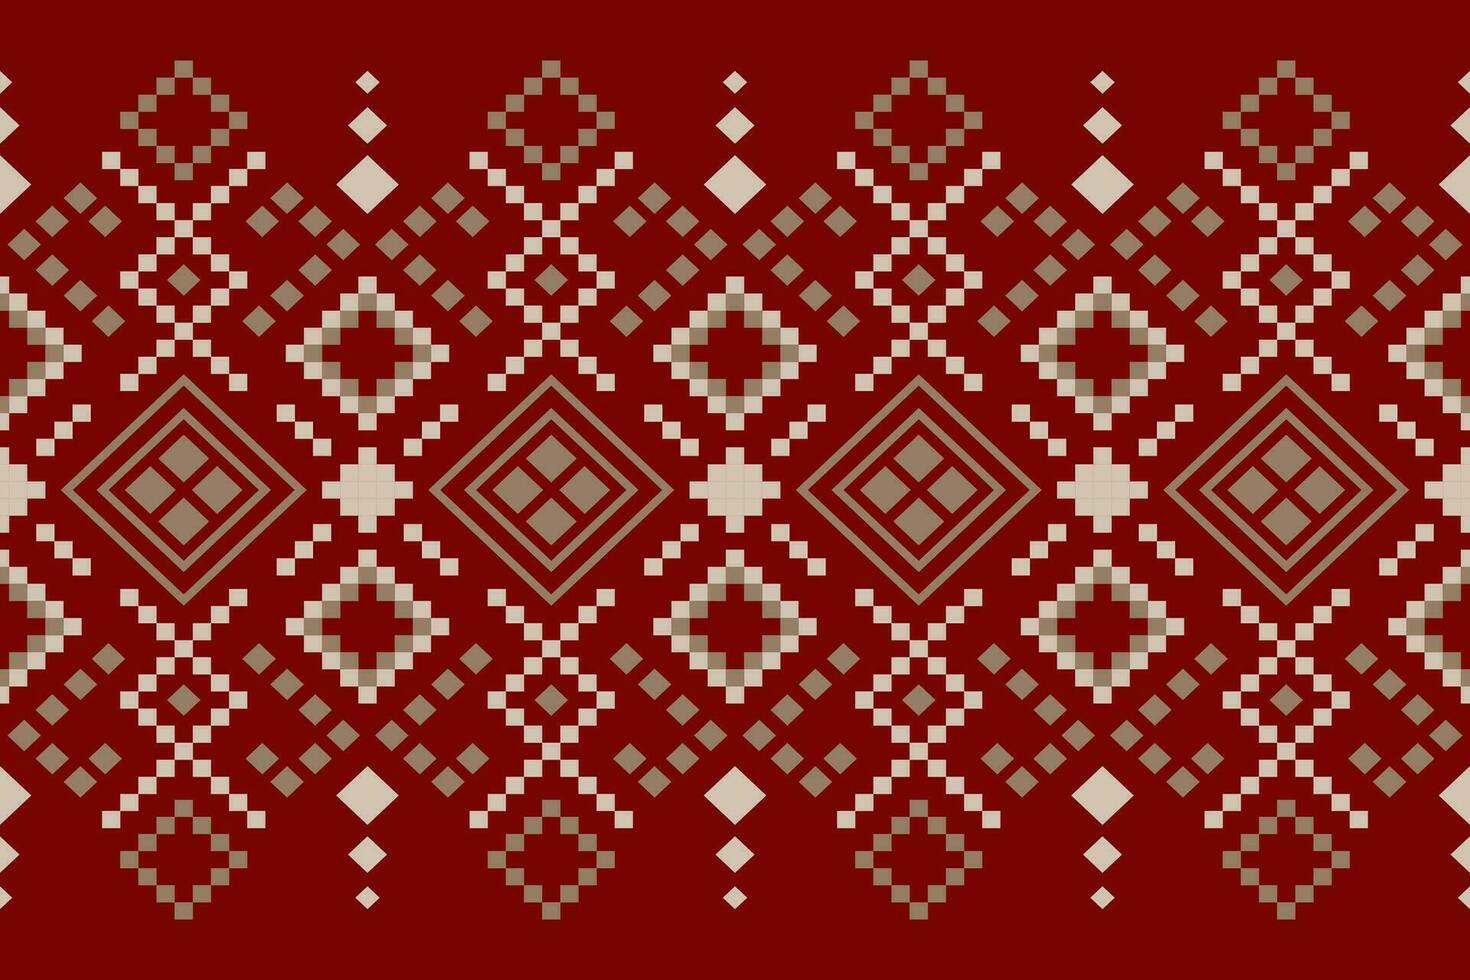 kruis steek kleurrijk meetkundig traditioneel etnisch patroon ikat naadloos patroon abstract ontwerp voor kleding stof afdrukken kleding jurk tapijt gordijnen en sarong aztec Afrikaanse Indisch Indonesisch vector